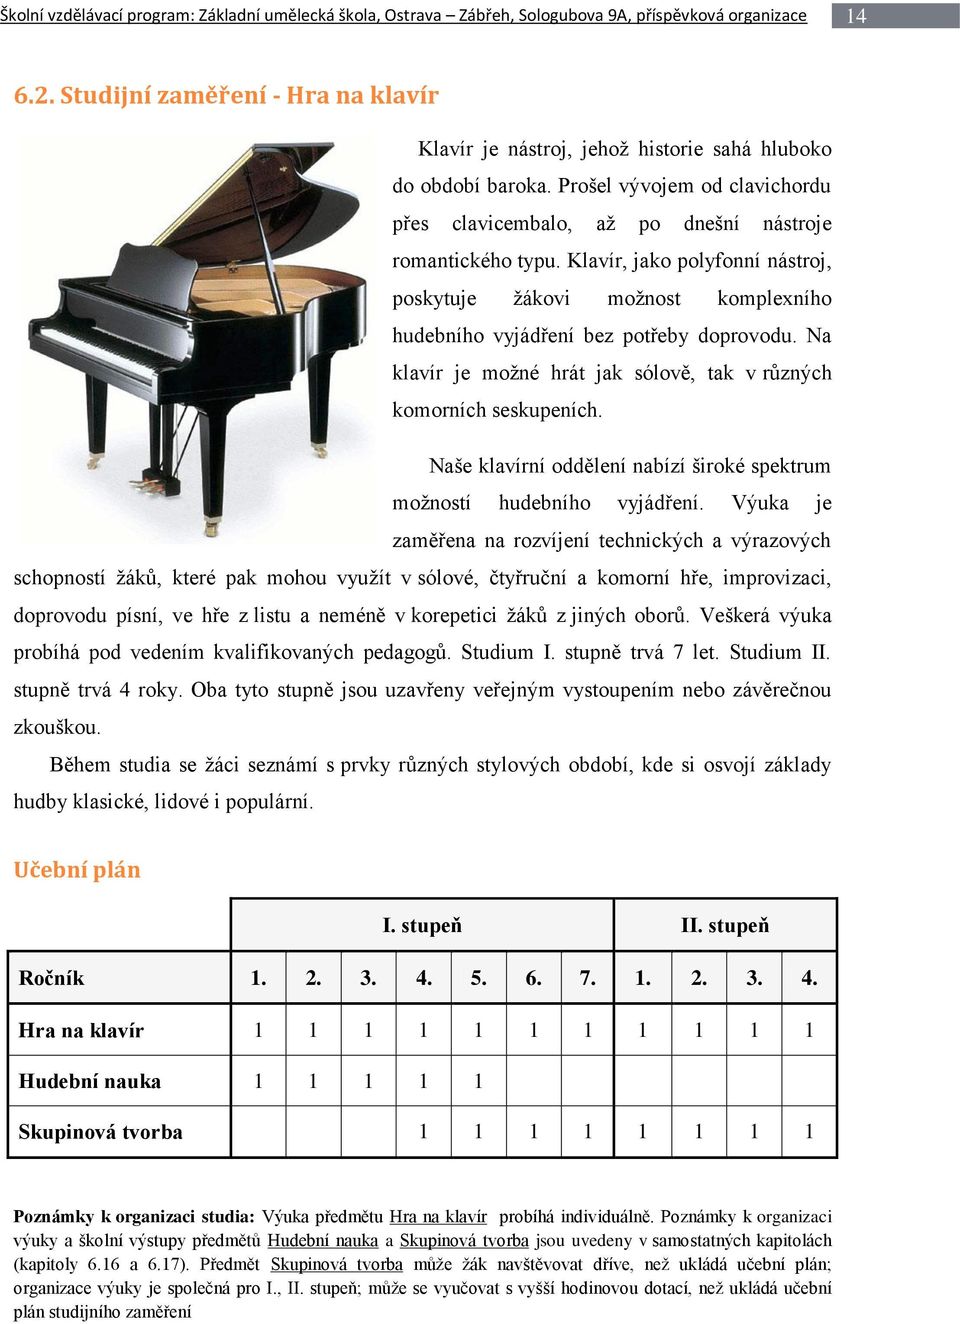 Klavír, jako polyfonní nástroj, poskytuje žákovi možnost komplexního hudebního vyjádření bez potřeby doprovodu. Na klavír je možné hrát jak sólově, tak v různých komorních seskupeních.